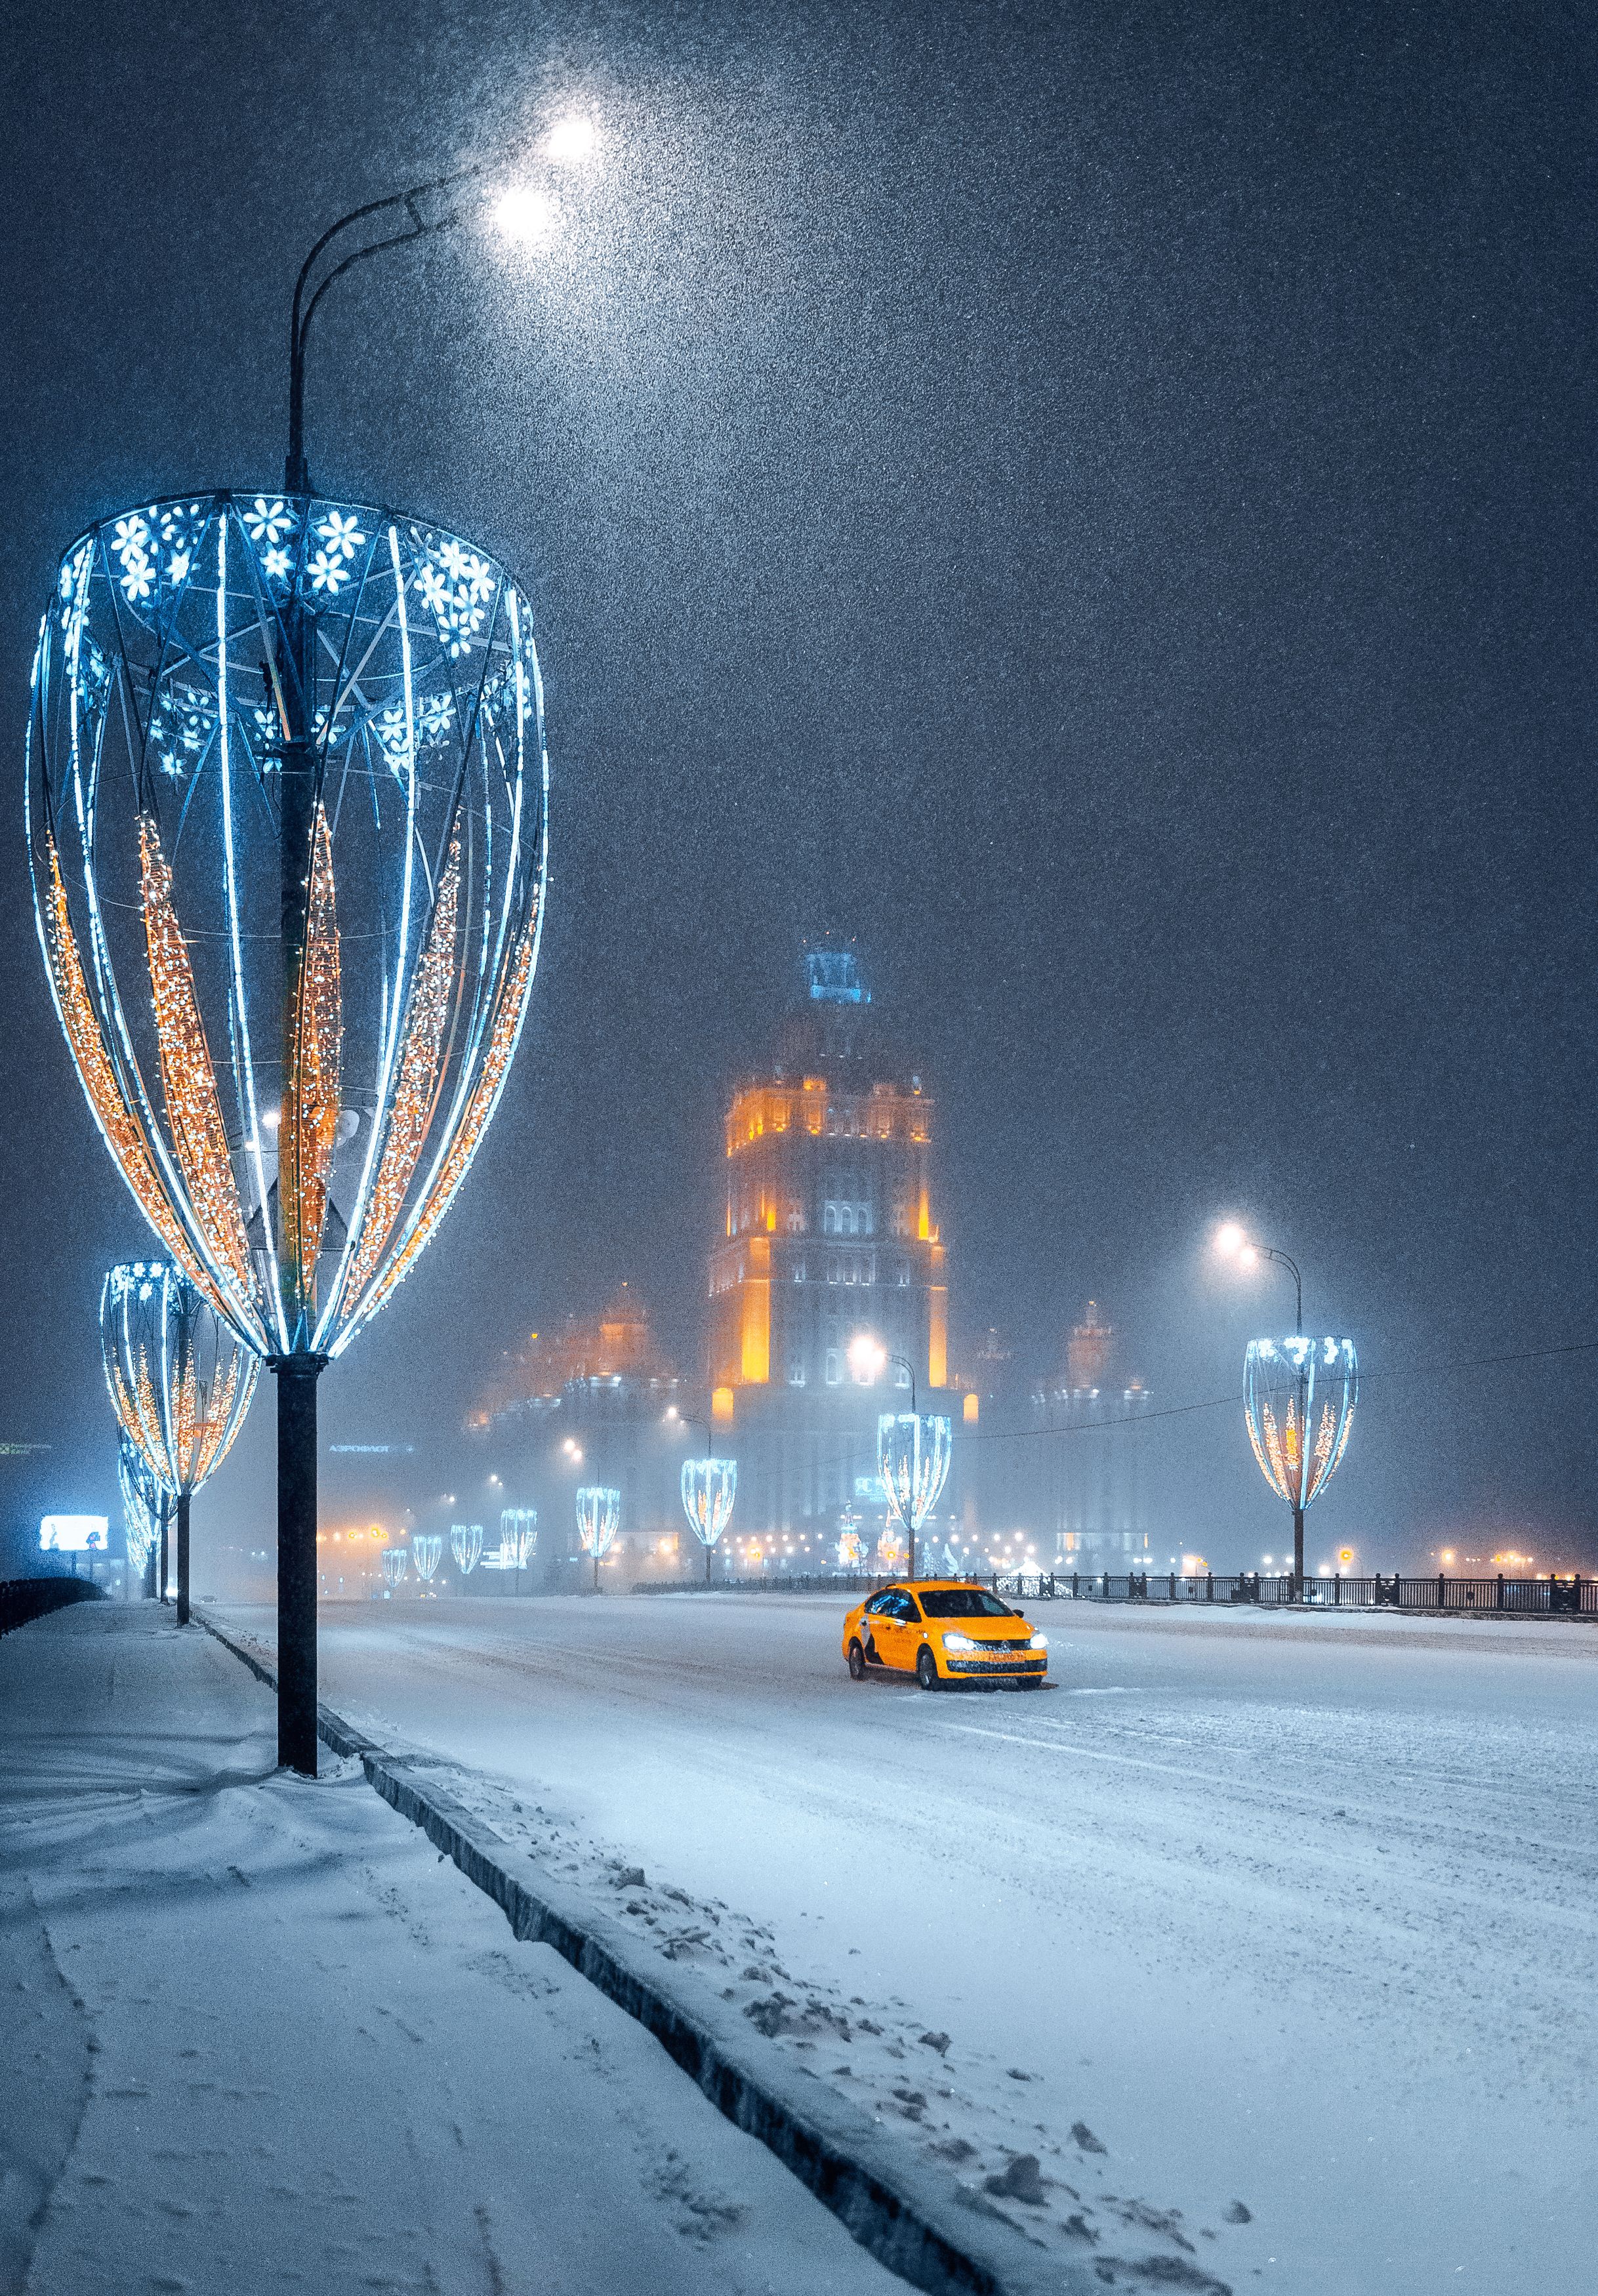 ночь, зима, такси, гостиница Украина, radisson, moscow, snow, winter, москва, Мазурева Анастасия